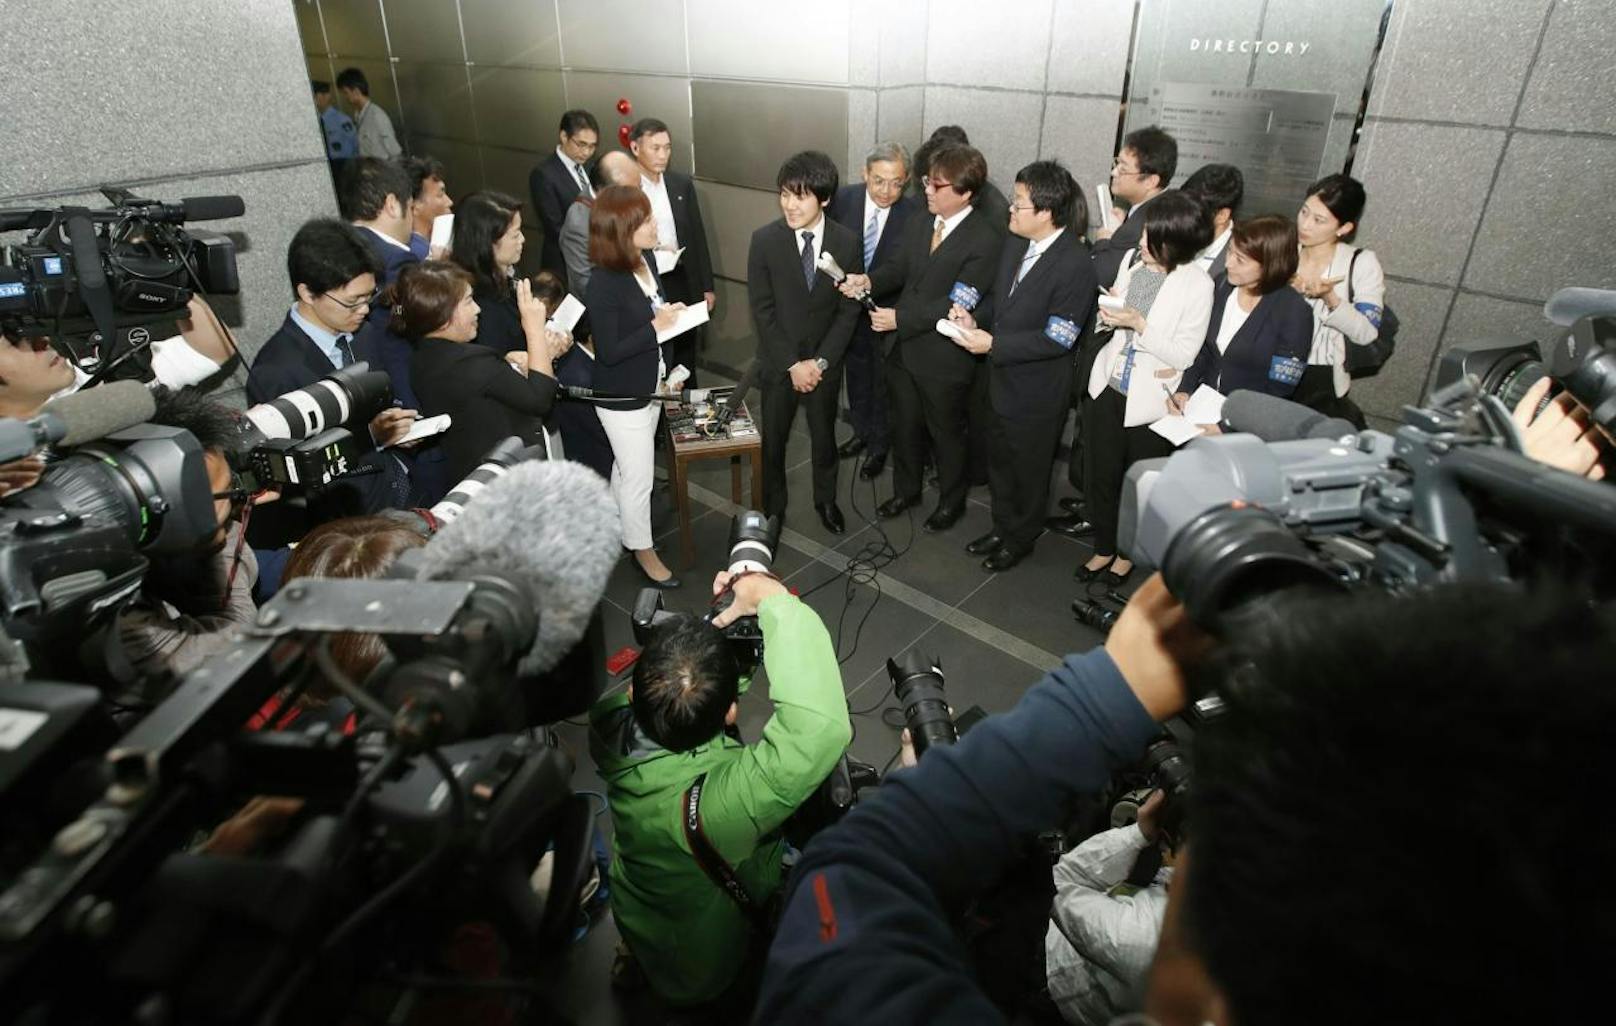 Die Adelsgeschichte des Jahres, mindestens: Der Verlobte Kei Komuro muss sich den Fragen der japanischen Presse stellen.